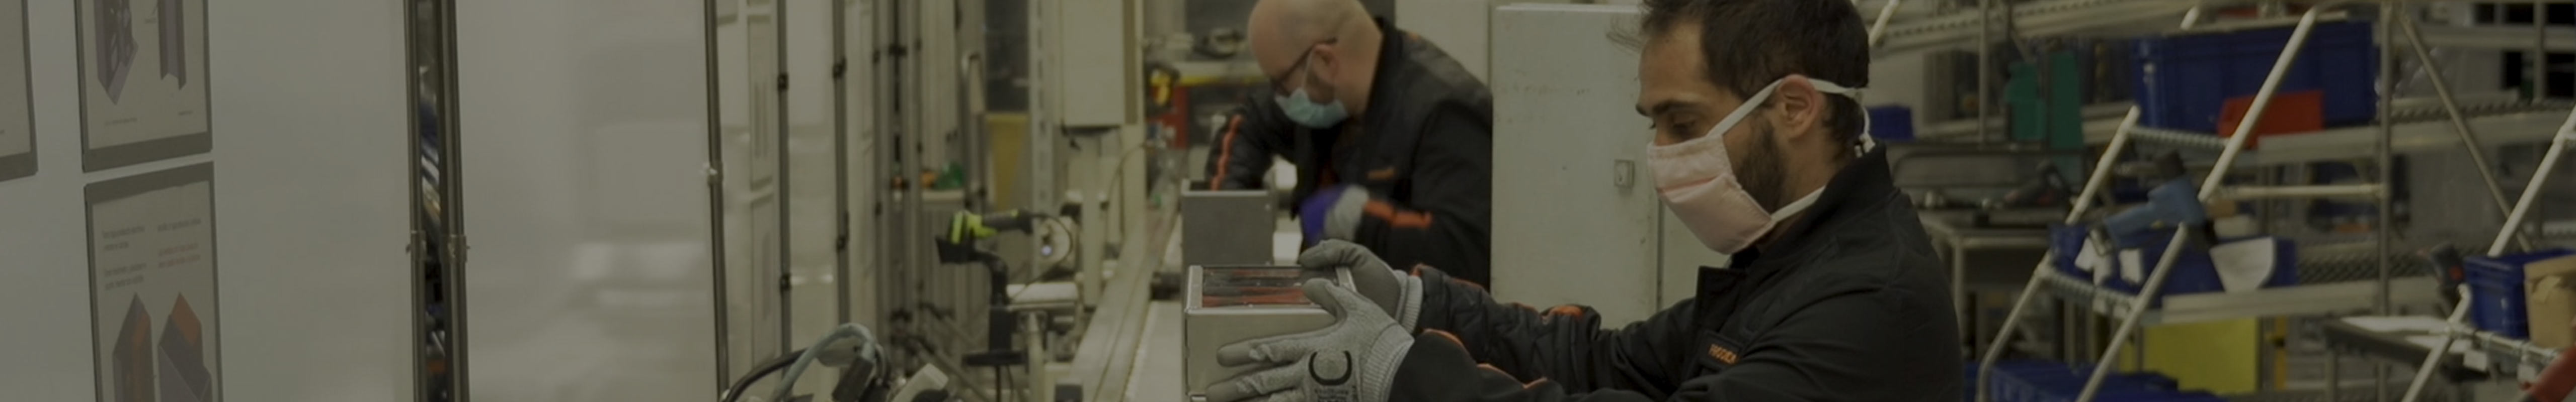 Arbetare med munskydd i SEAT-fabrik, som inspekterar bildelar